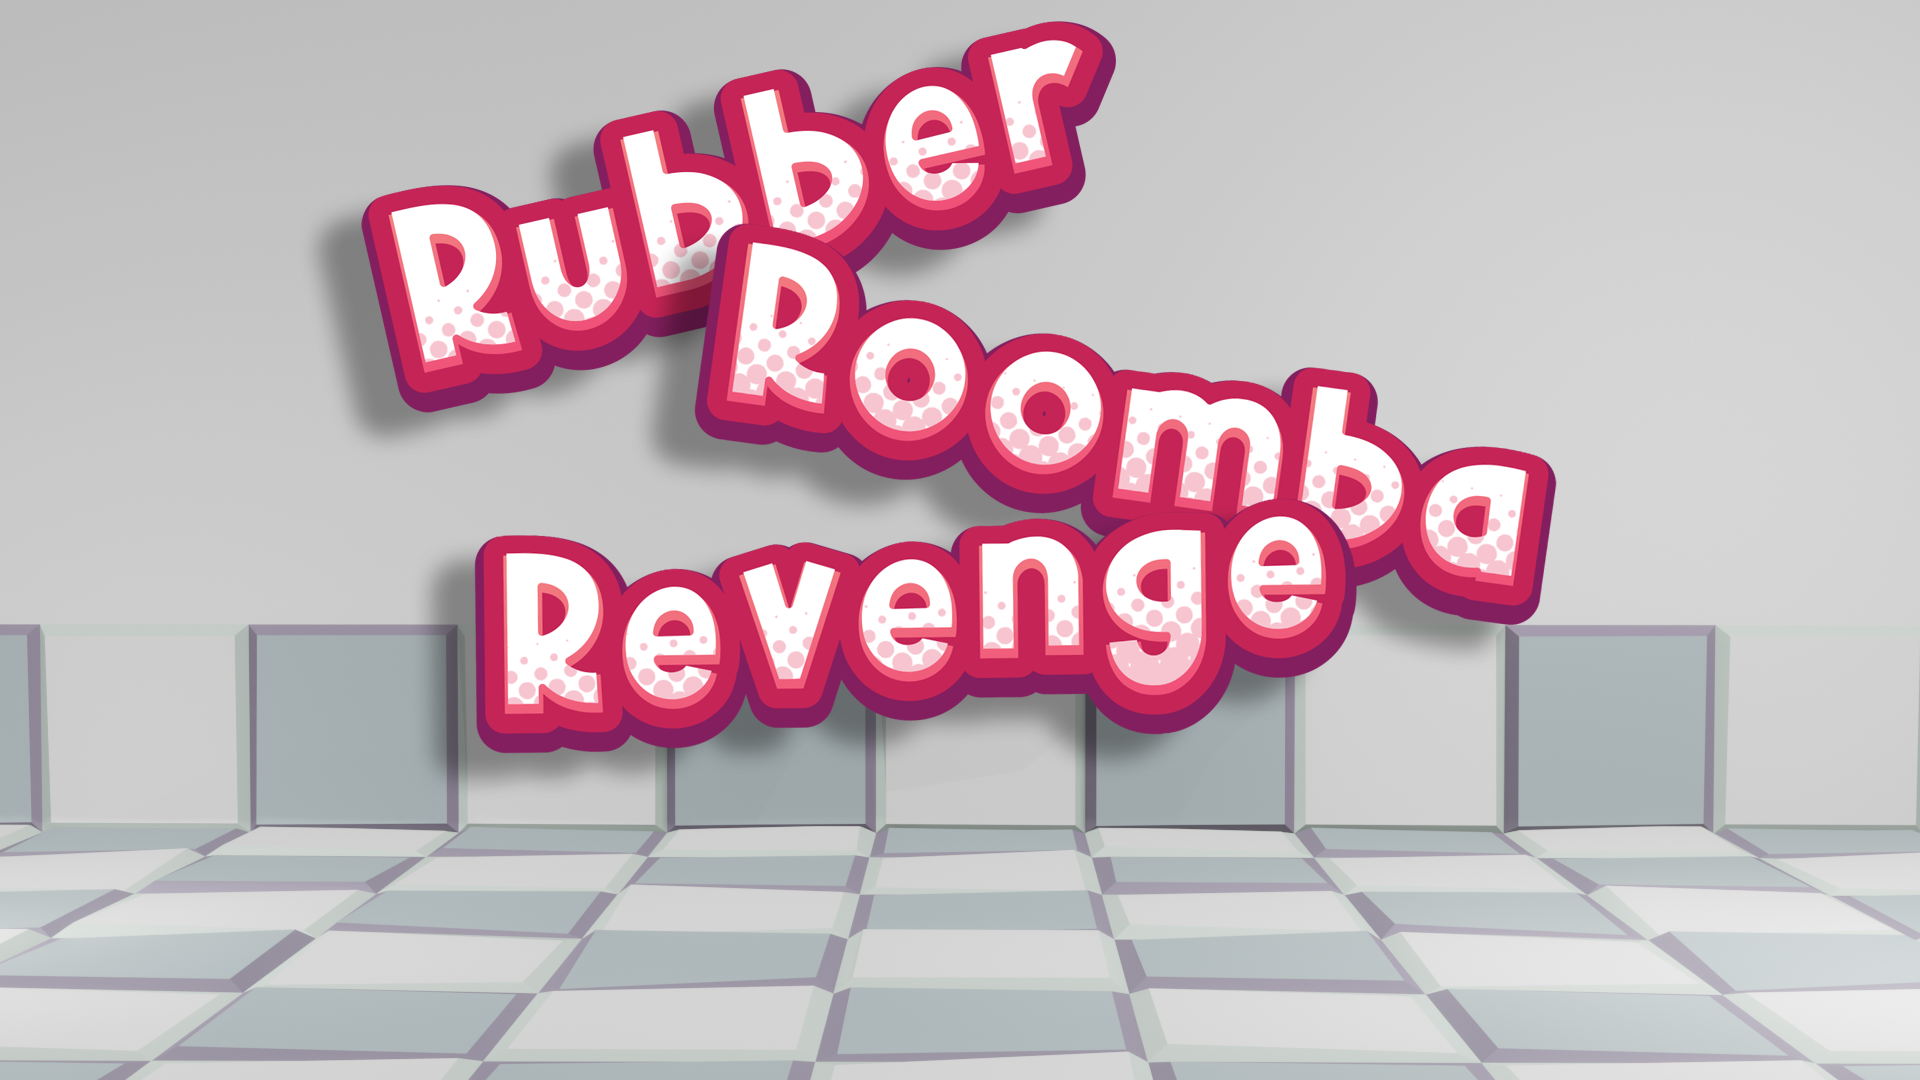 Rubber Roomba Revenge